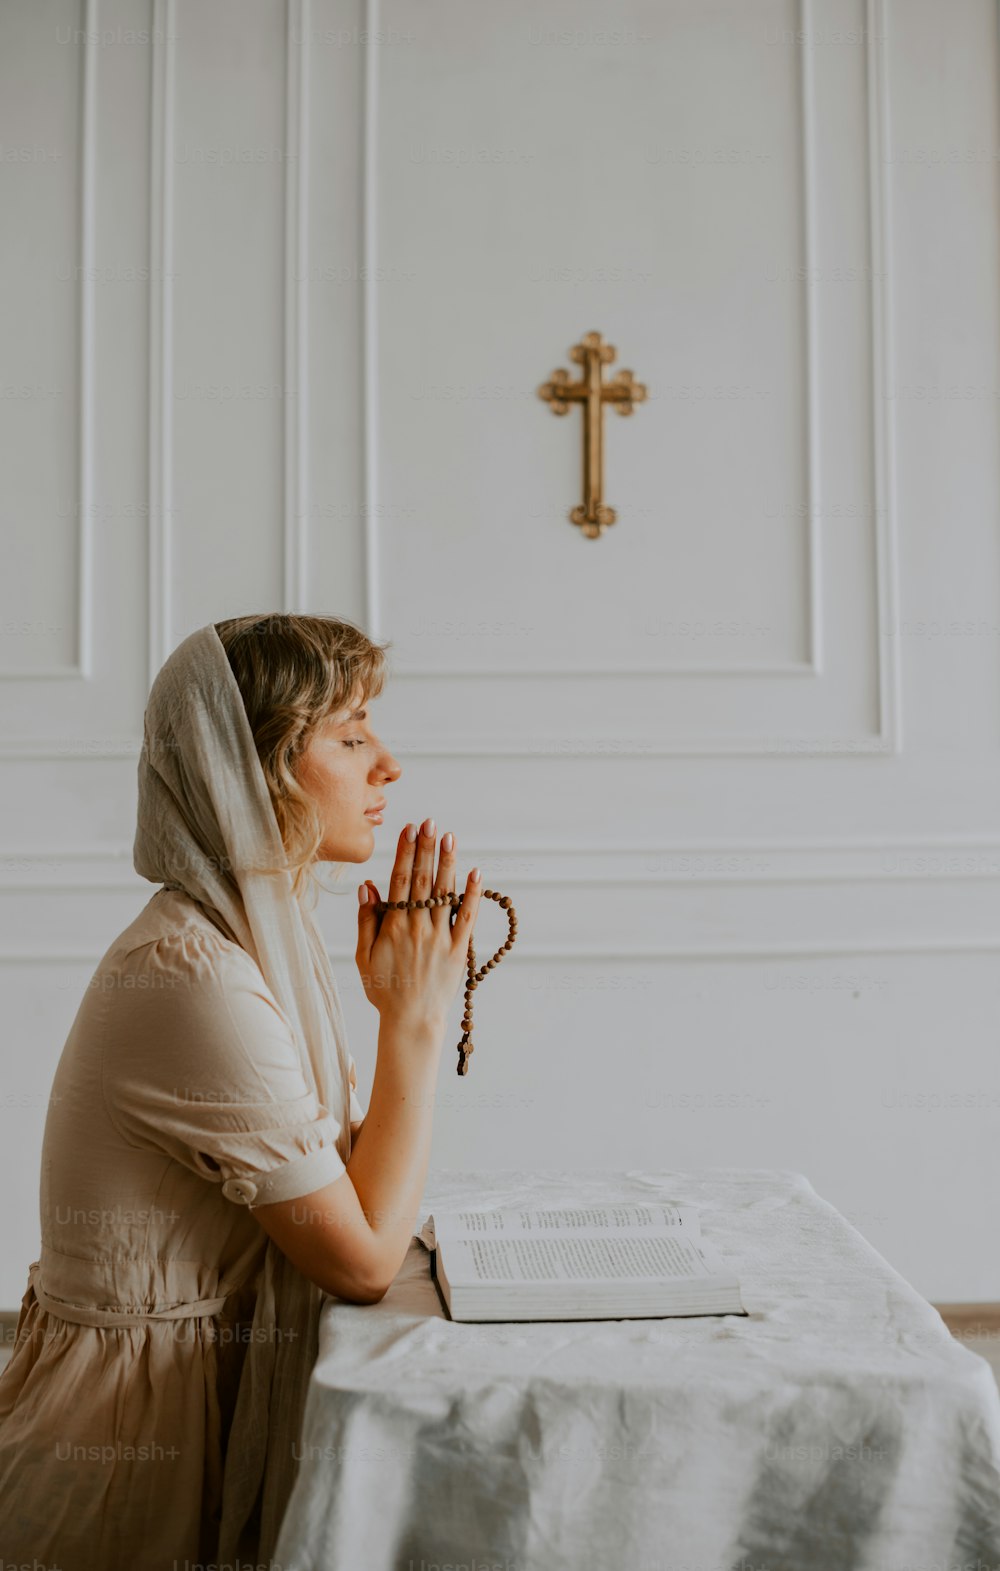 Eine Frau, die an einem Tisch vor einem Kreuz sitzt